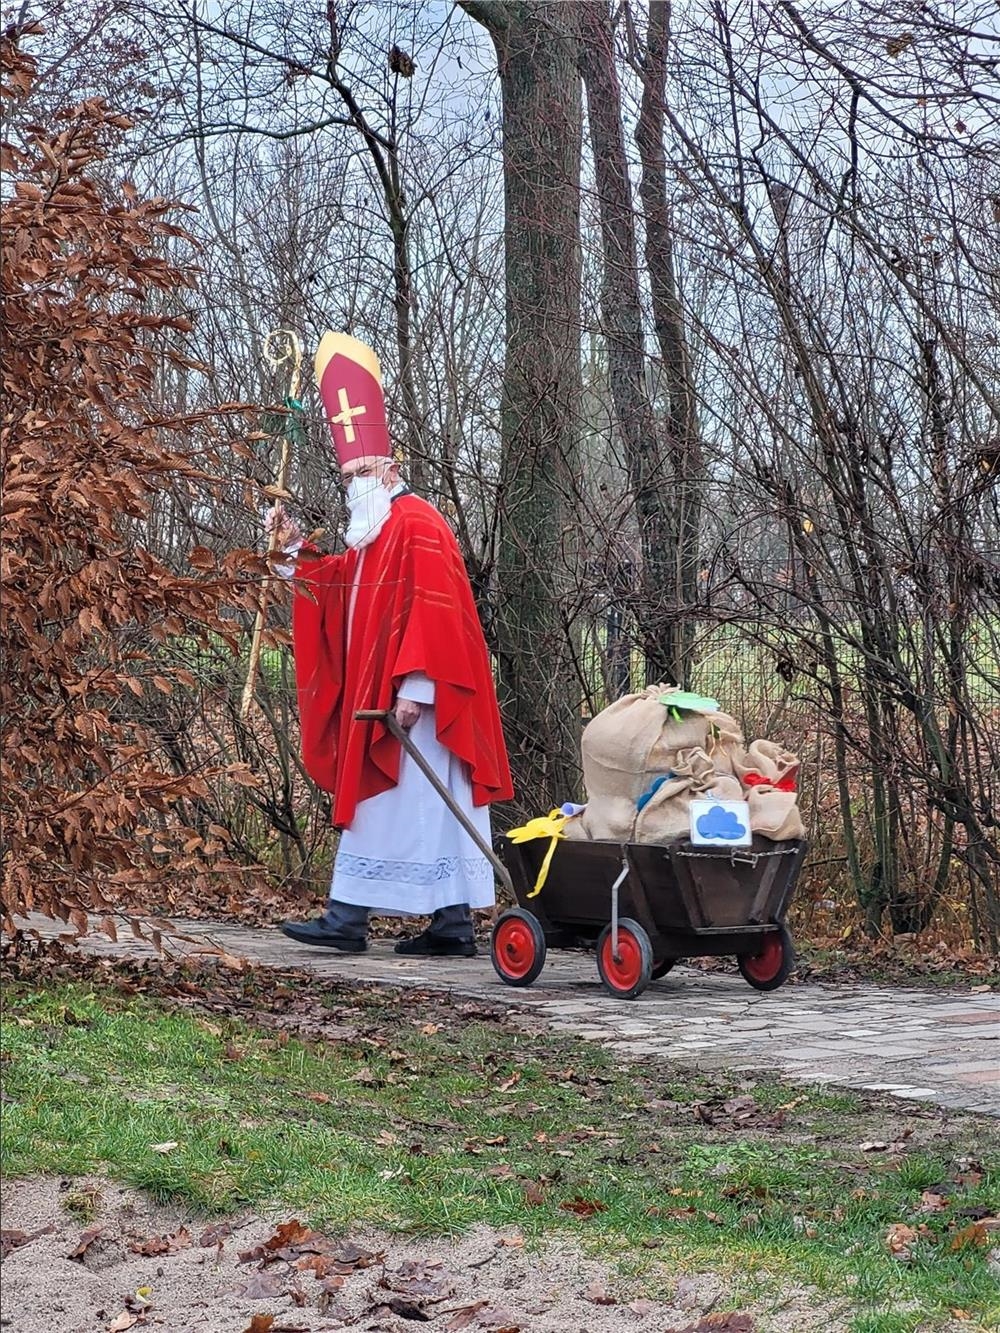 Bischof Nikolaus mit Bollerwagen auf dem Weg zum Familienzentrum Kita Arche Noah (© Caritasverband Worms e. V.)